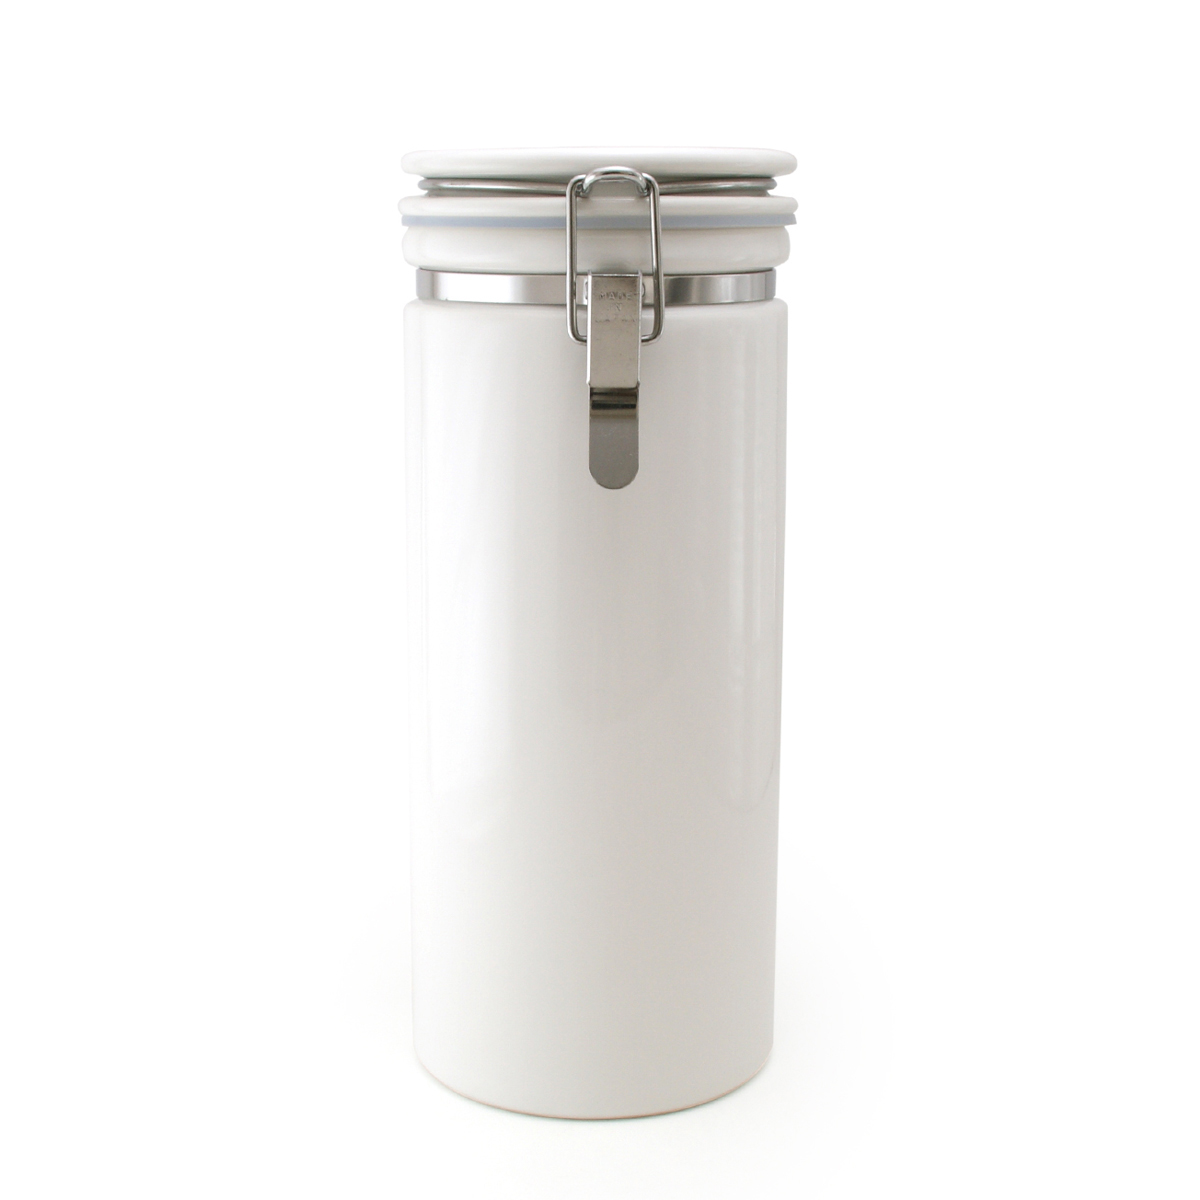 ゼロジャパン 日本製 陶製密封保存容器 迅速な対応で商品をお届け致します ZEROJAPAN コーヒーキャニスター340 爆安プライス ホワイト